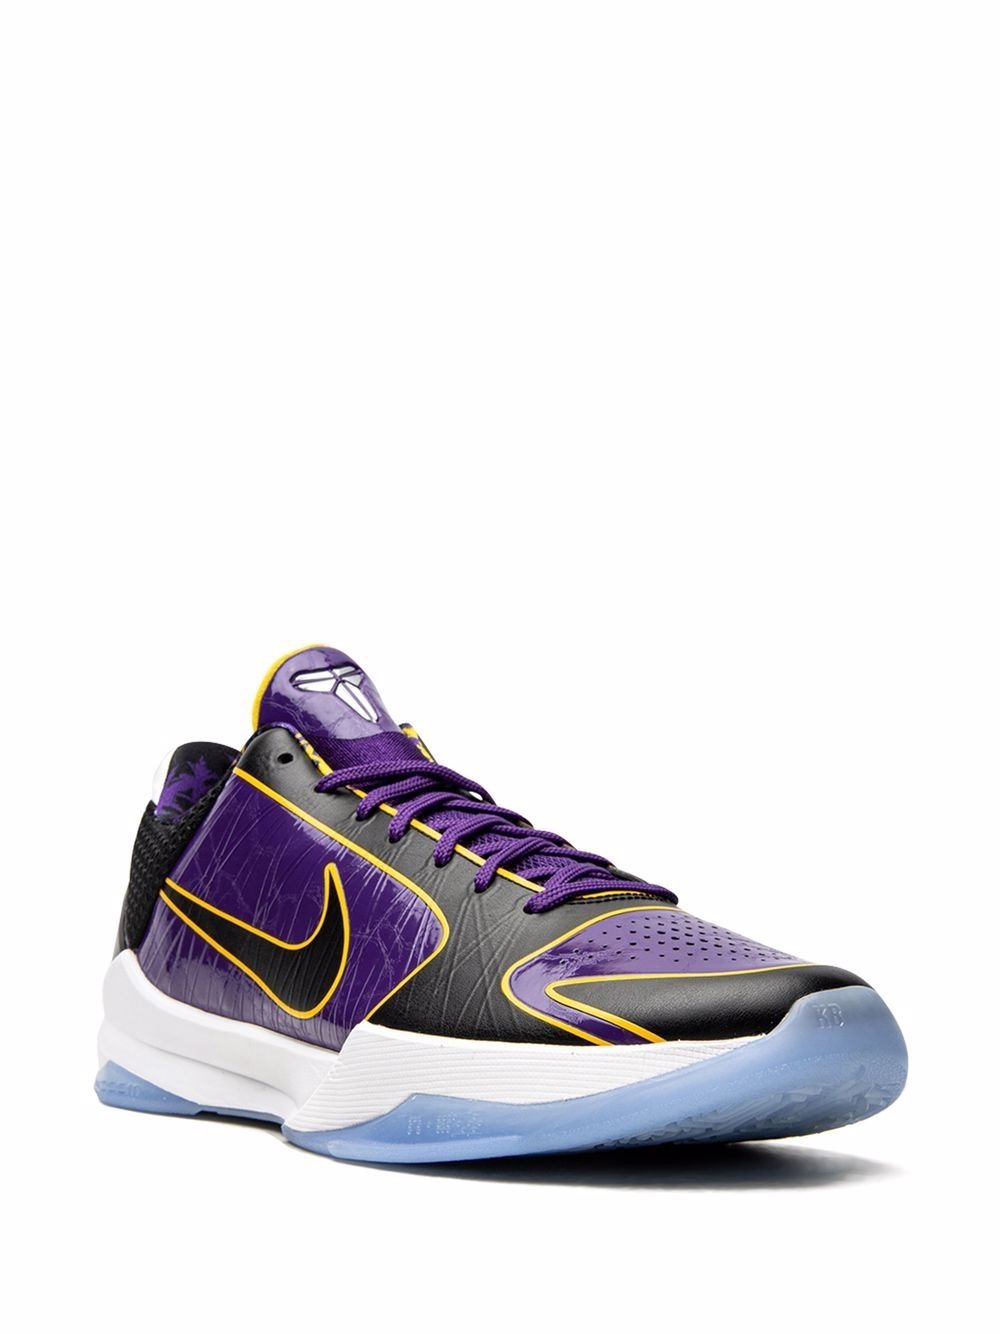 Kobe 5 Protro â5x Champ/Lakersâ sneakers - 2